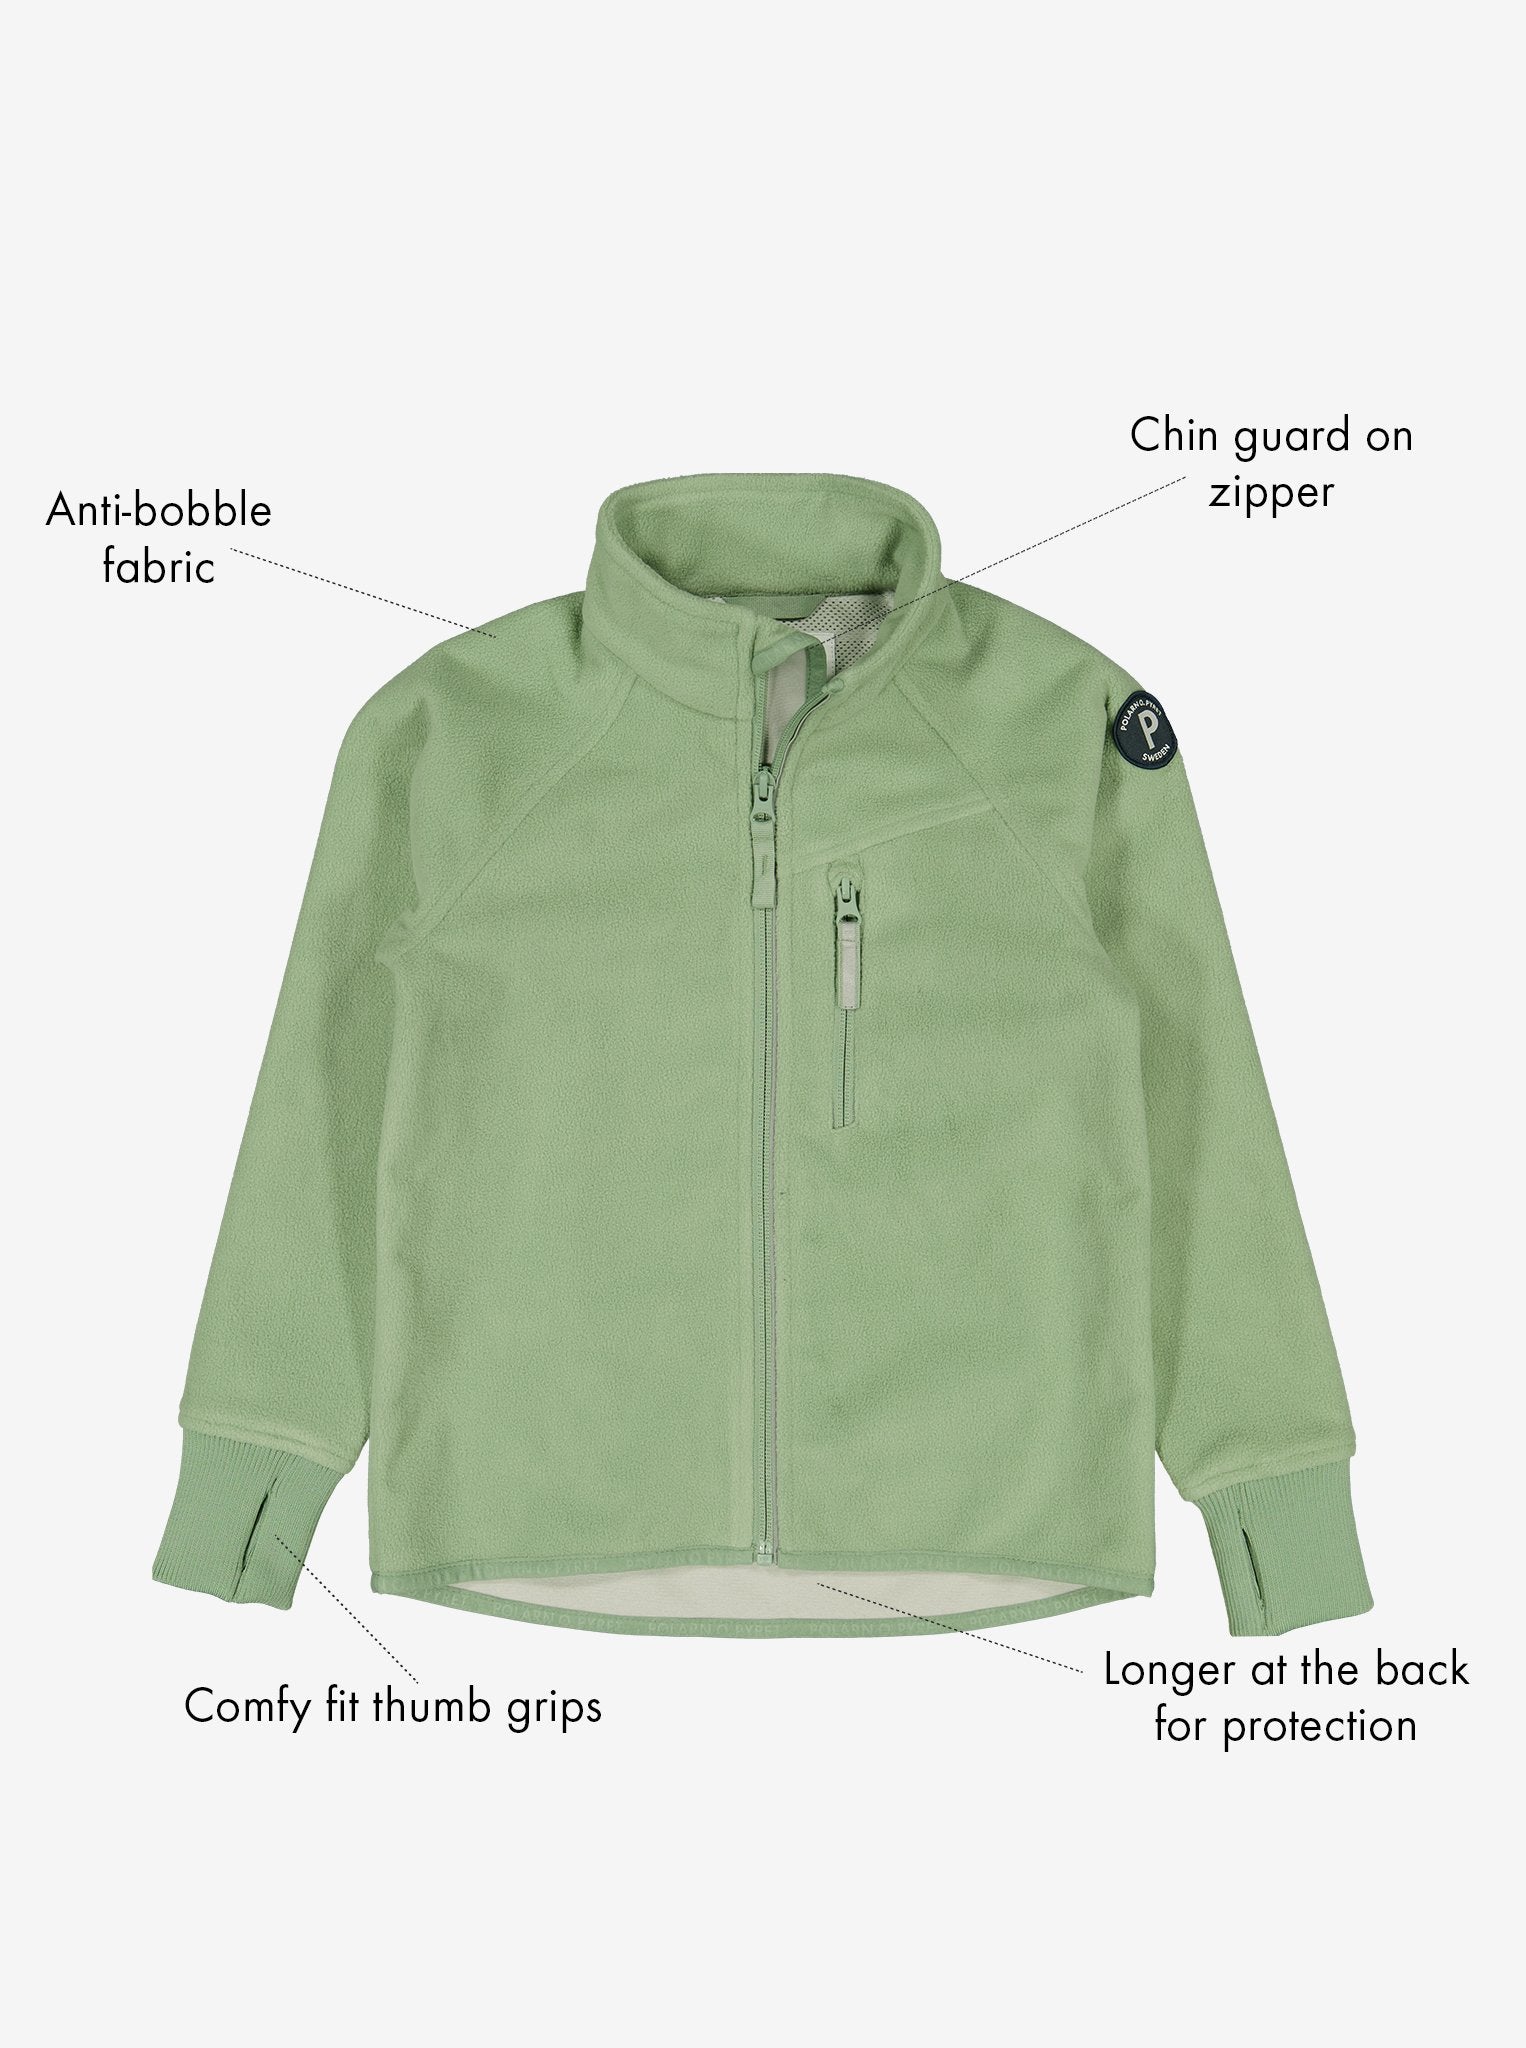 Green Kids Showerproof Fleece Jacket from Polarn O. Pyret Kidswear. Quality Kids Fleece Jacket